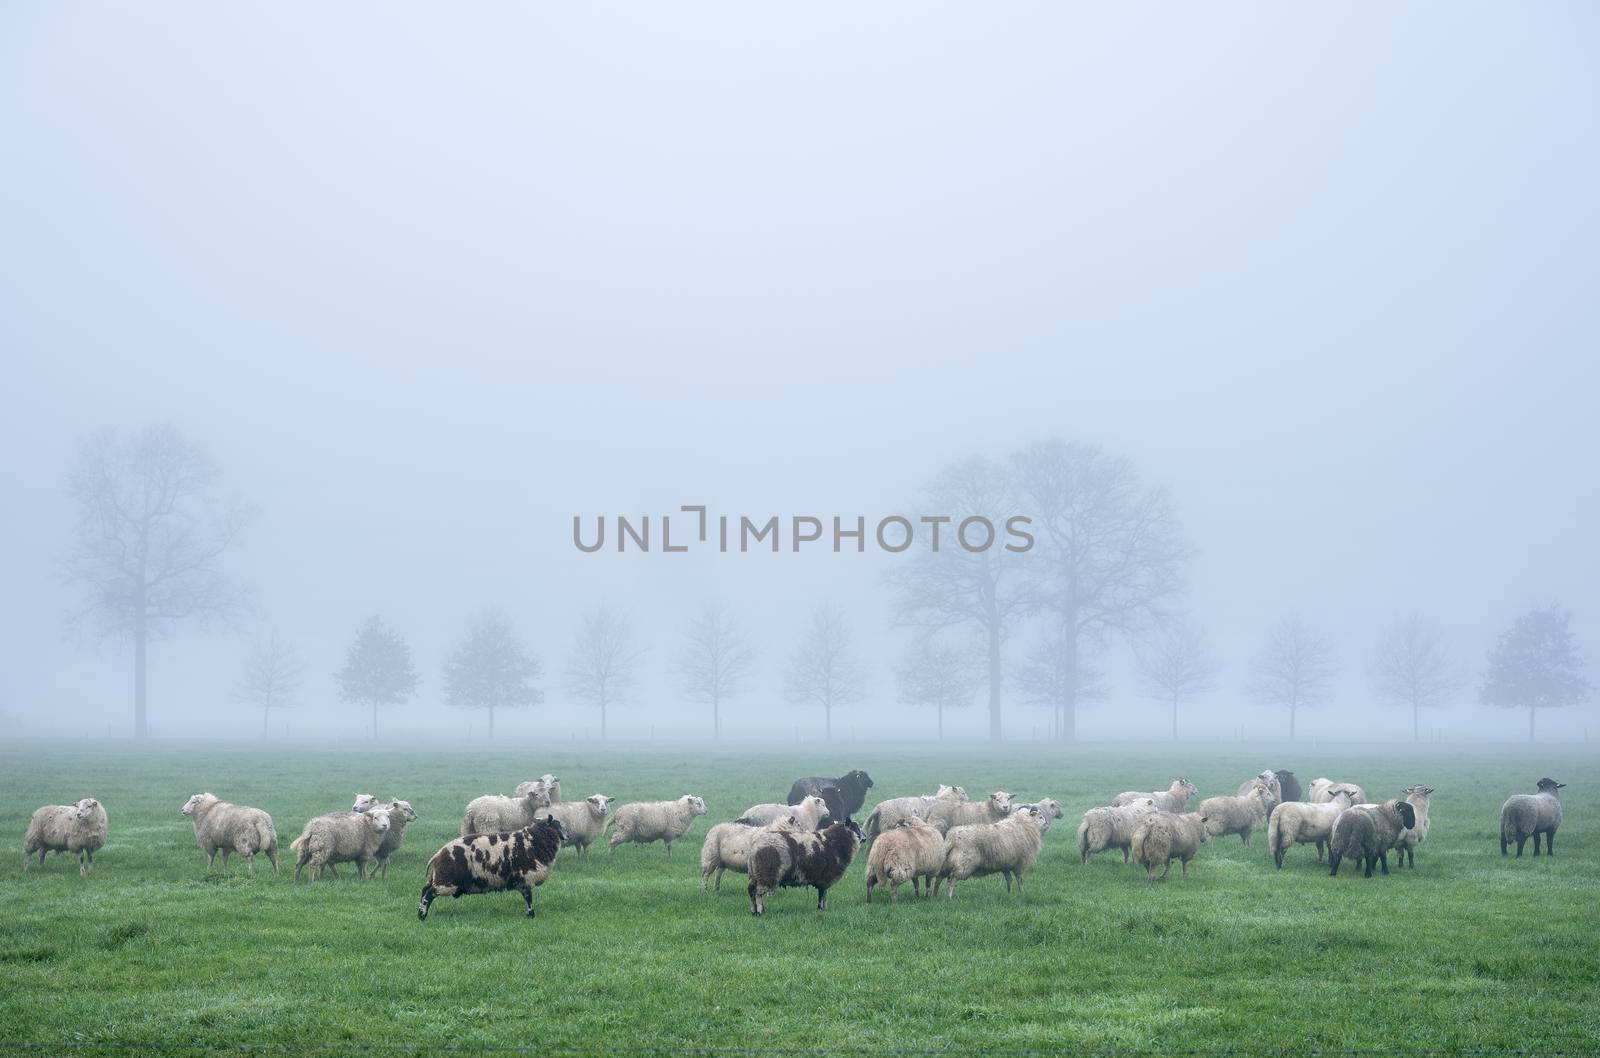 sheep in meadow near farm in dutch province of utrecht in holland on misty winter day